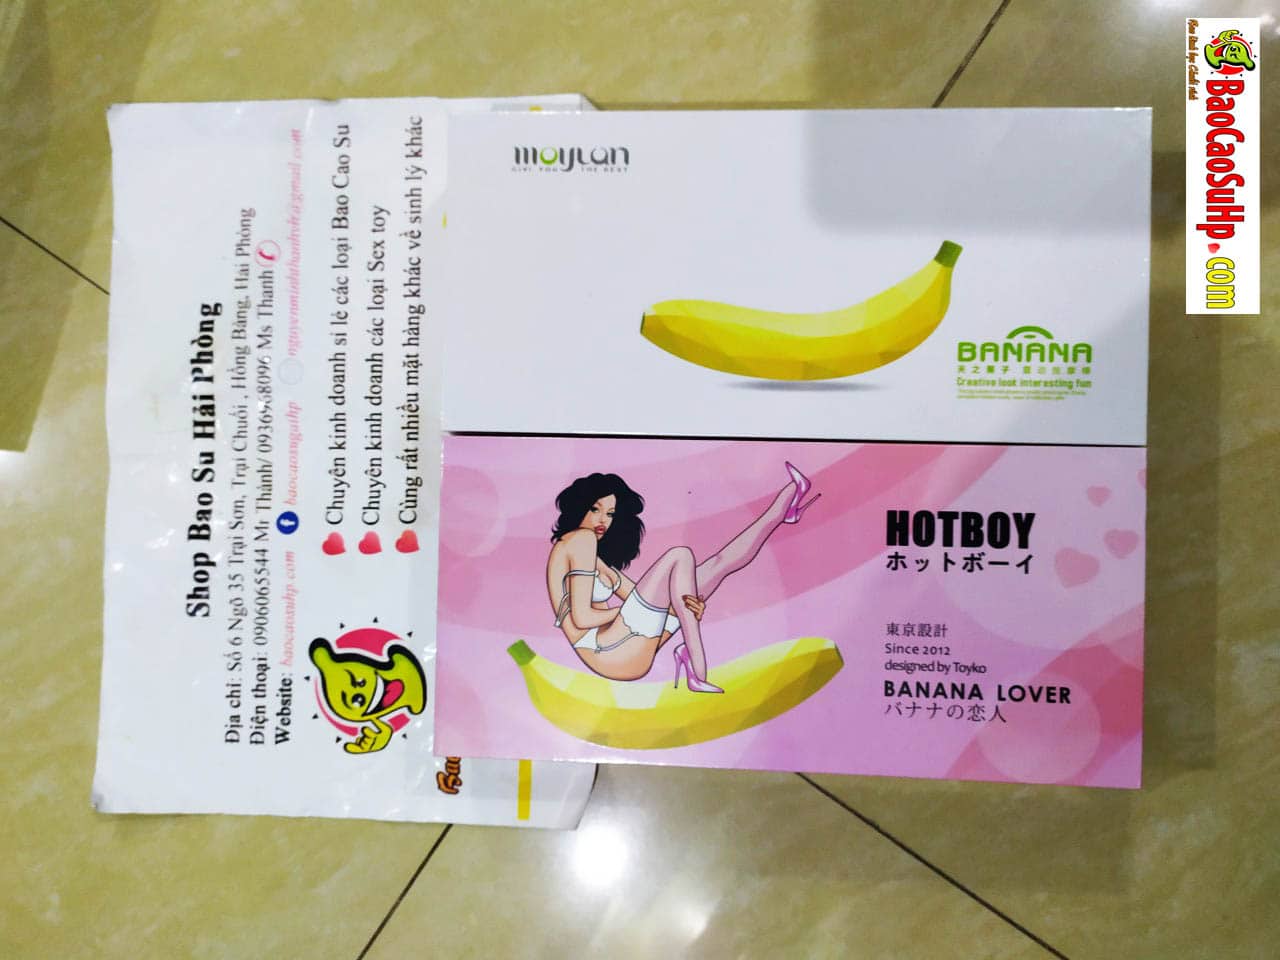 20190324140105 8652789 sextoy duong vat banana chuoi rung - Shop dương vật giả tại Hải Phòng được yêu thích nhất!! uy tín ship nhanh